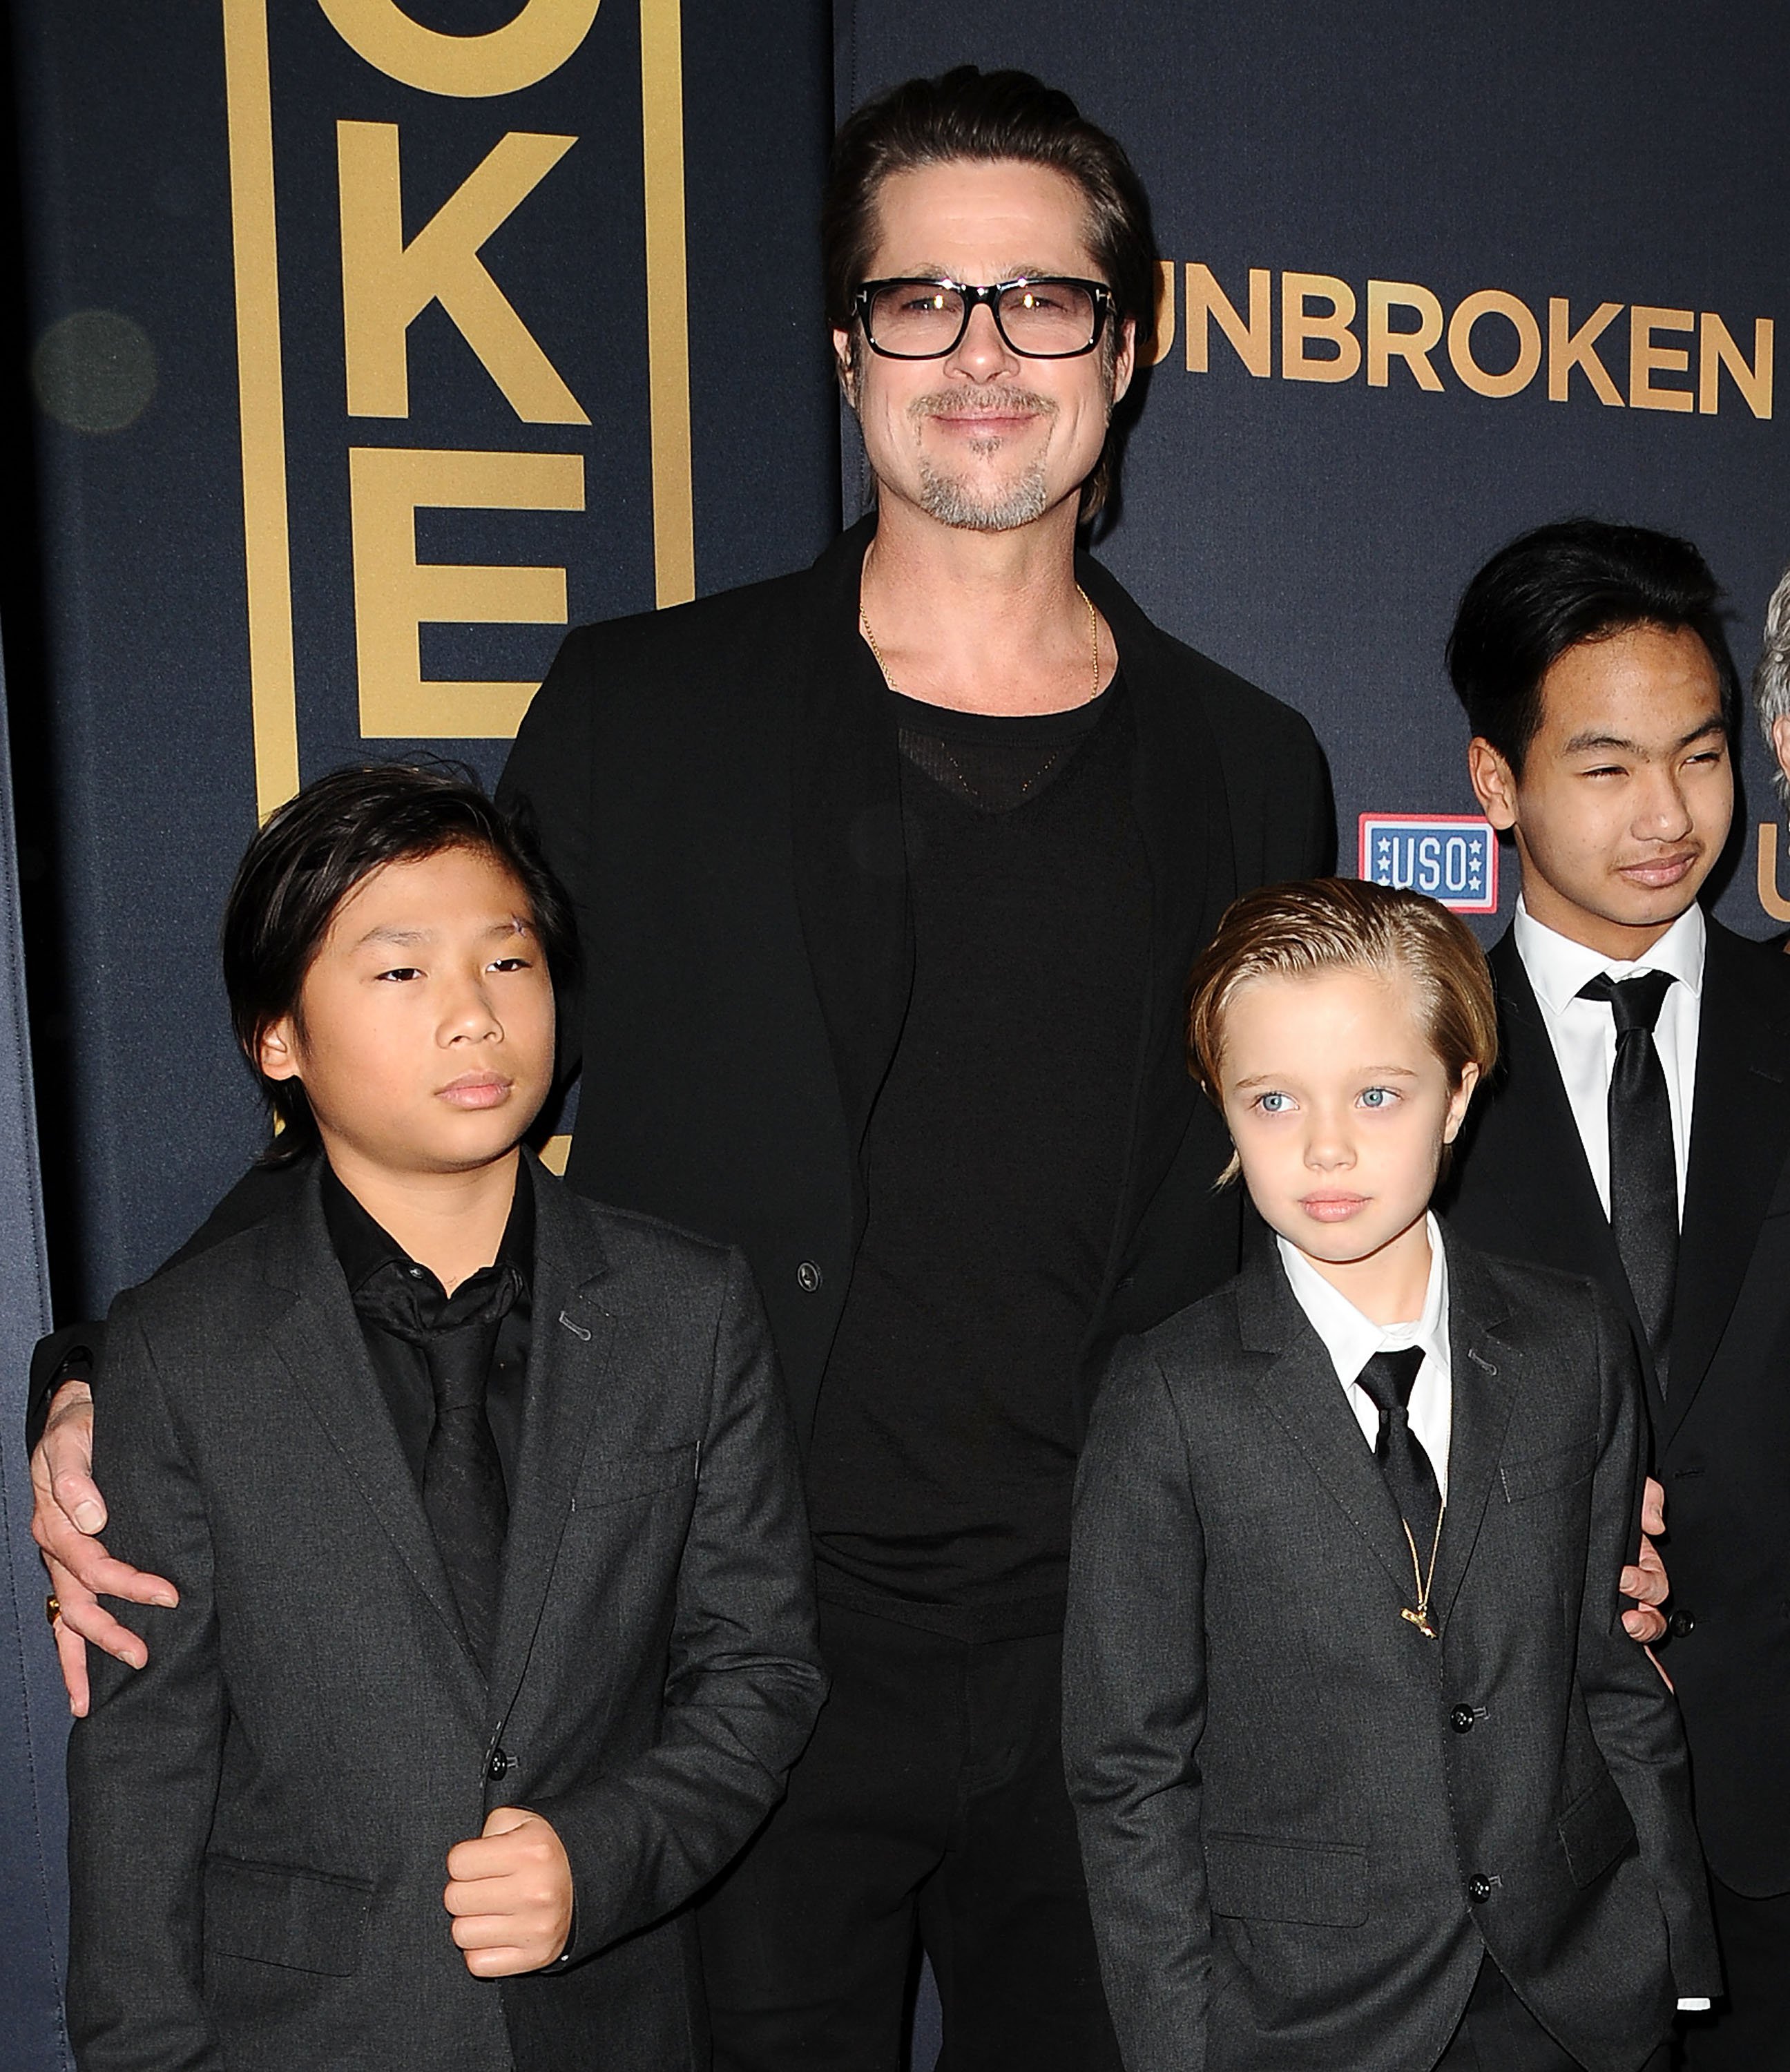 Pax Thien Jolie-Pitt, Brad Pitt, Shiloh Nouvel Jolie-Pitt y Maddox Jolie-Pitt en el estreno de "Unbroken" en TCL Chinese Theatre IMAX, el 15 de diciembre de 2014 en Hollywood, California. | Foto: Getty Images